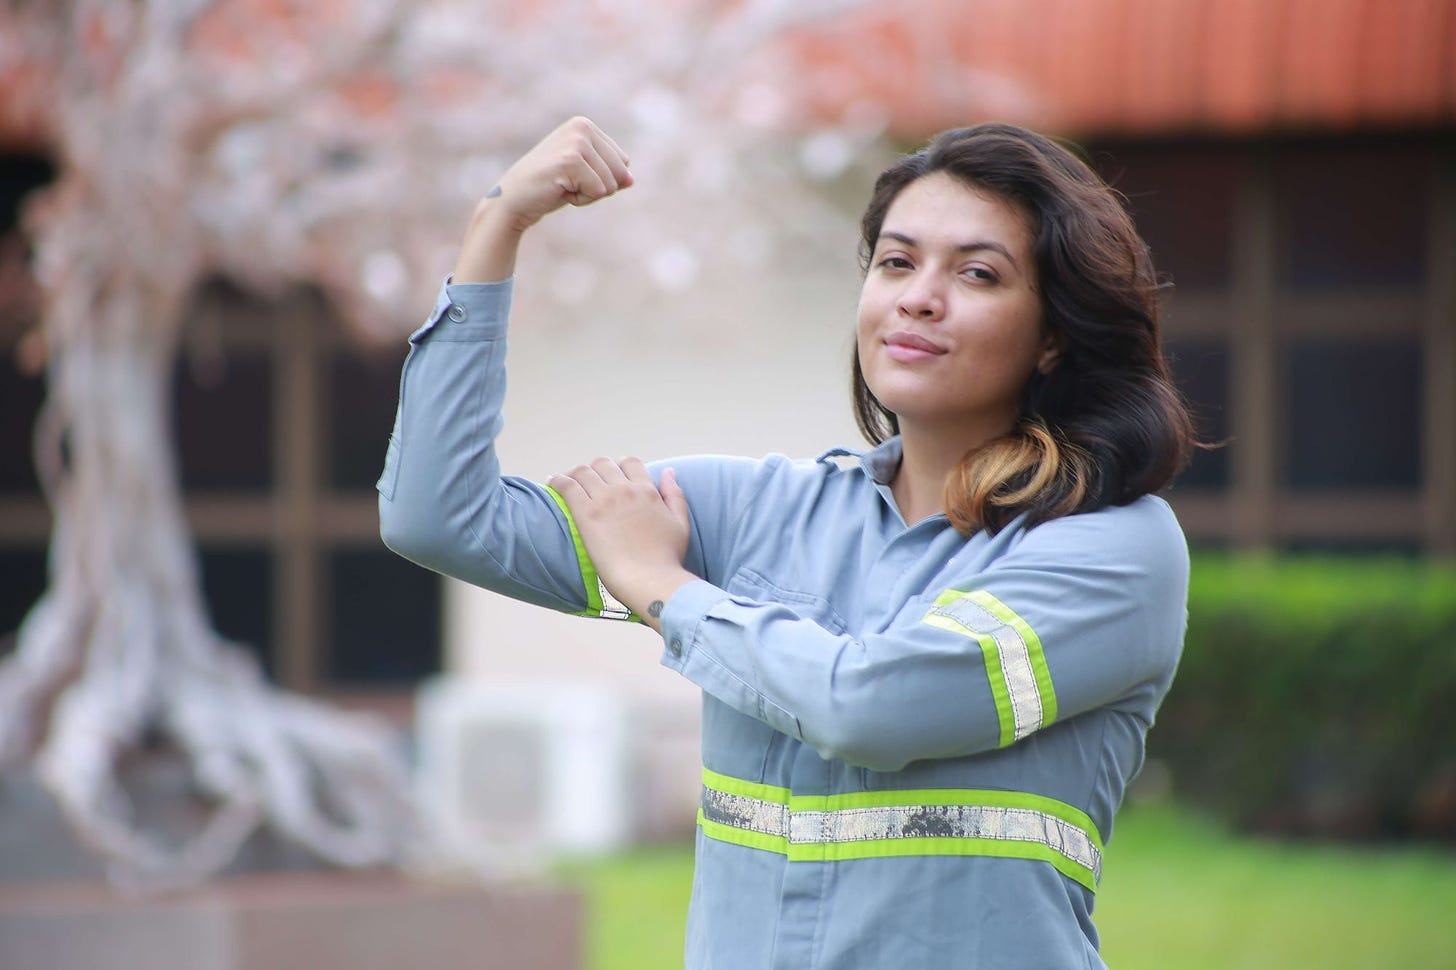 Garota de cabelos longos, com uniforme da Hydro. Ela flexiona o braço para mostrar sua força como no cartaz "We can do it!".